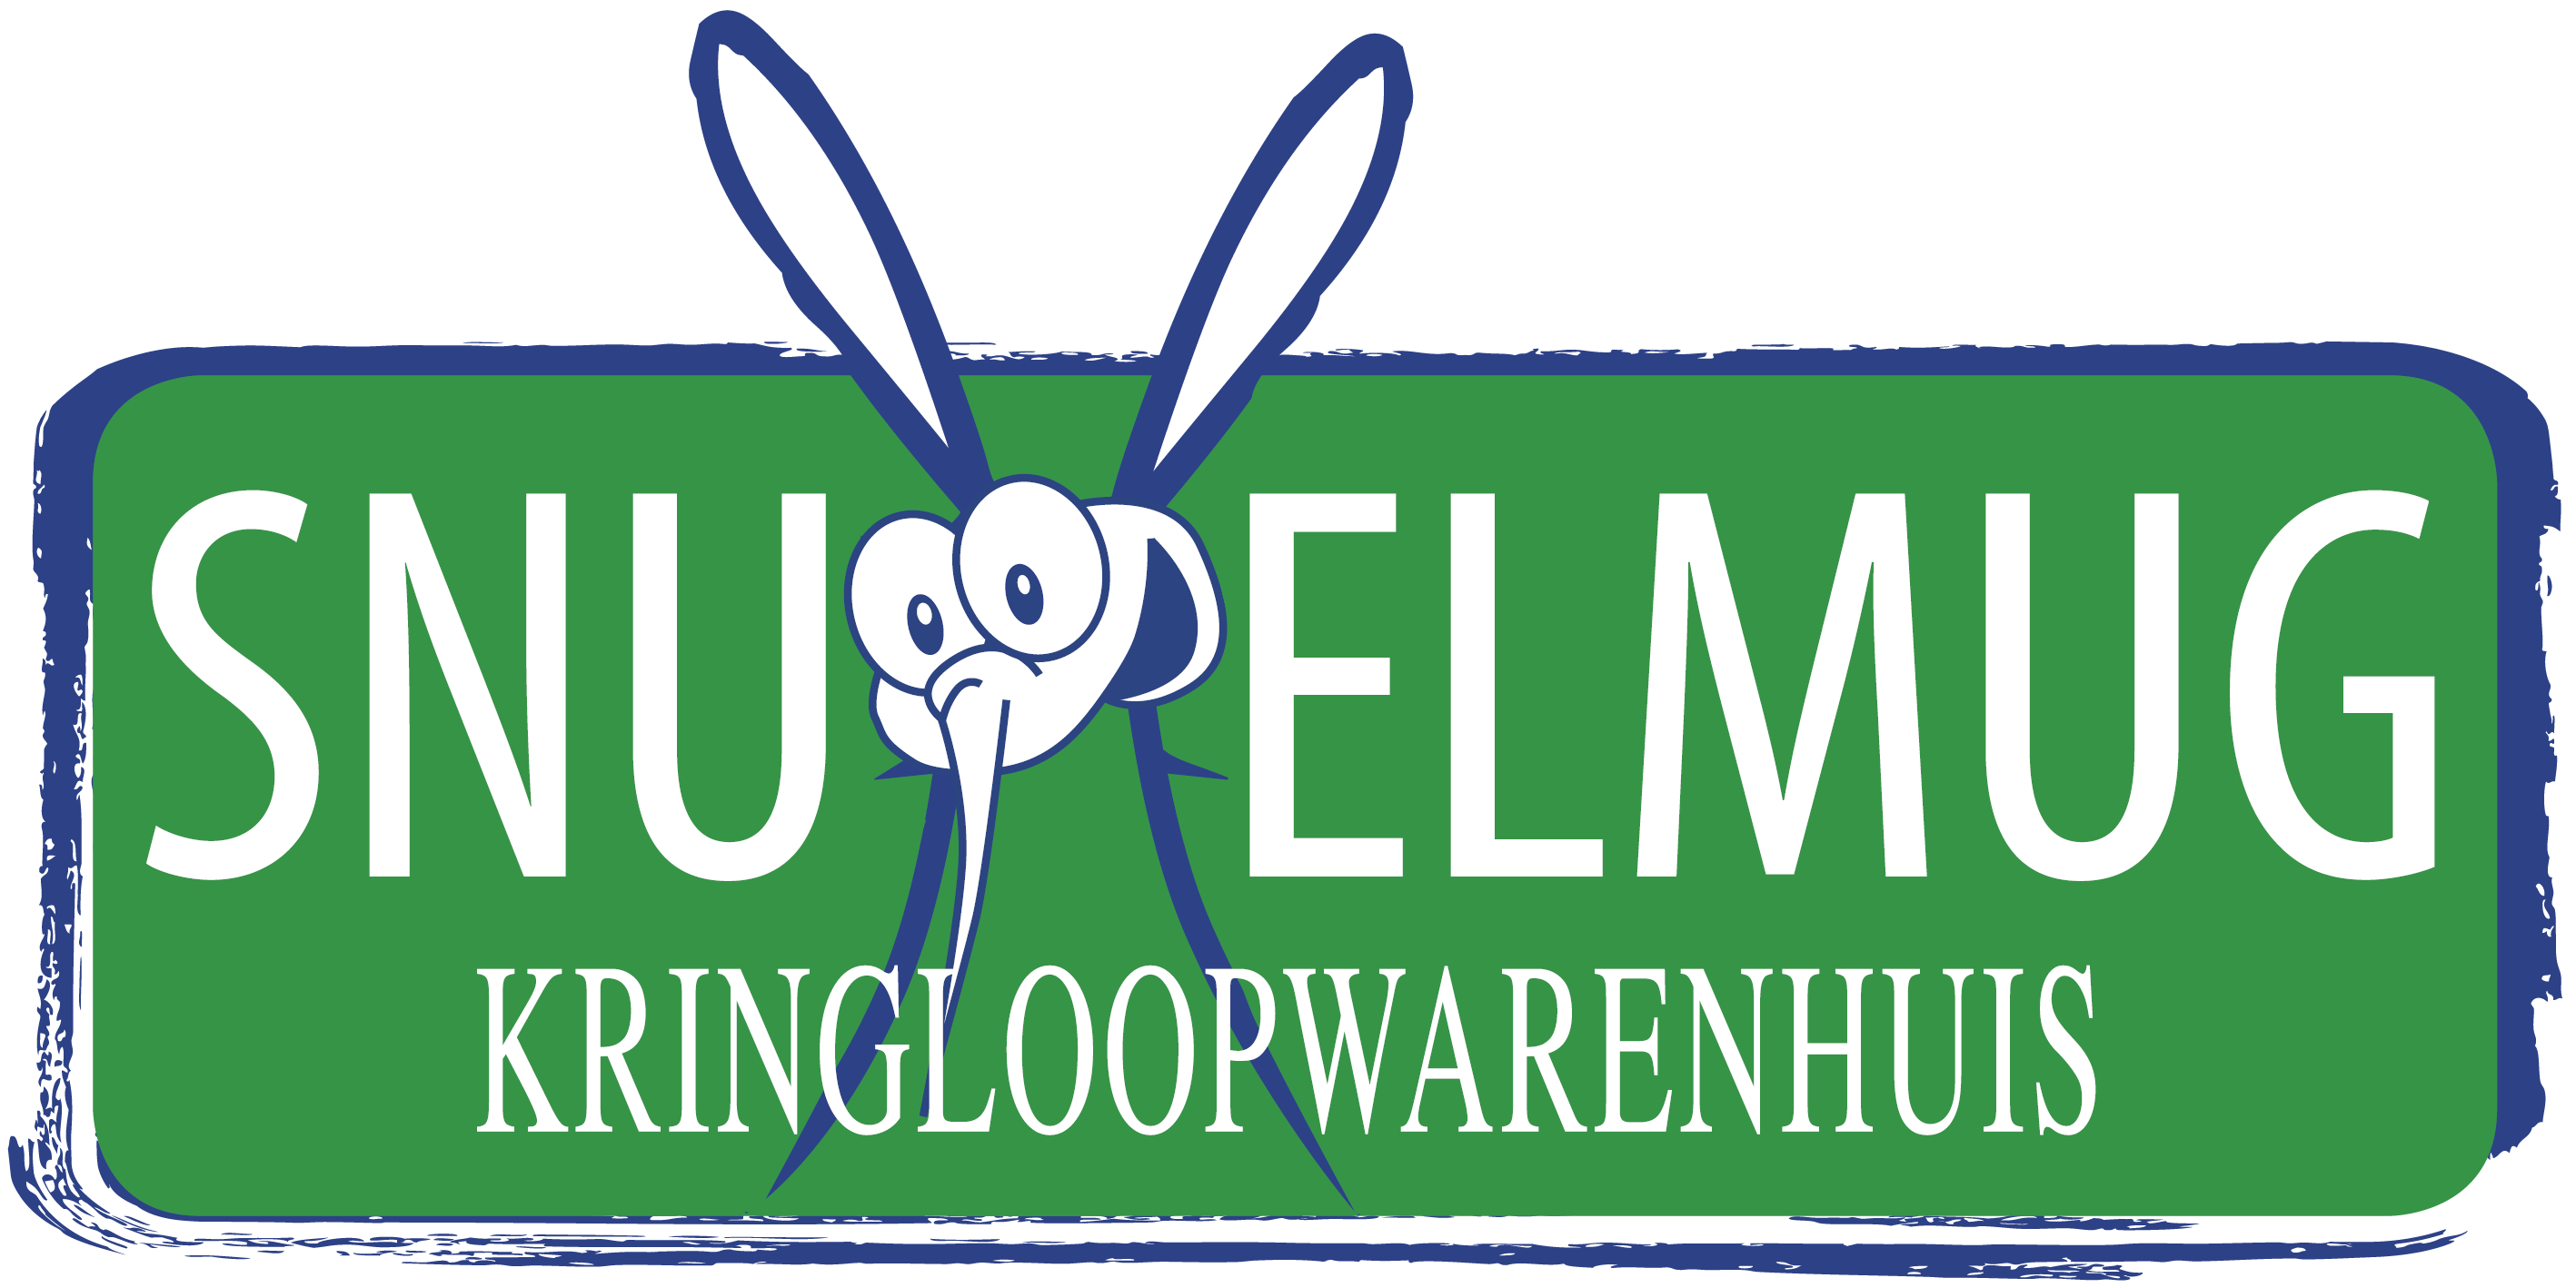 Snuffelmug Kringloopwarenhuis logo